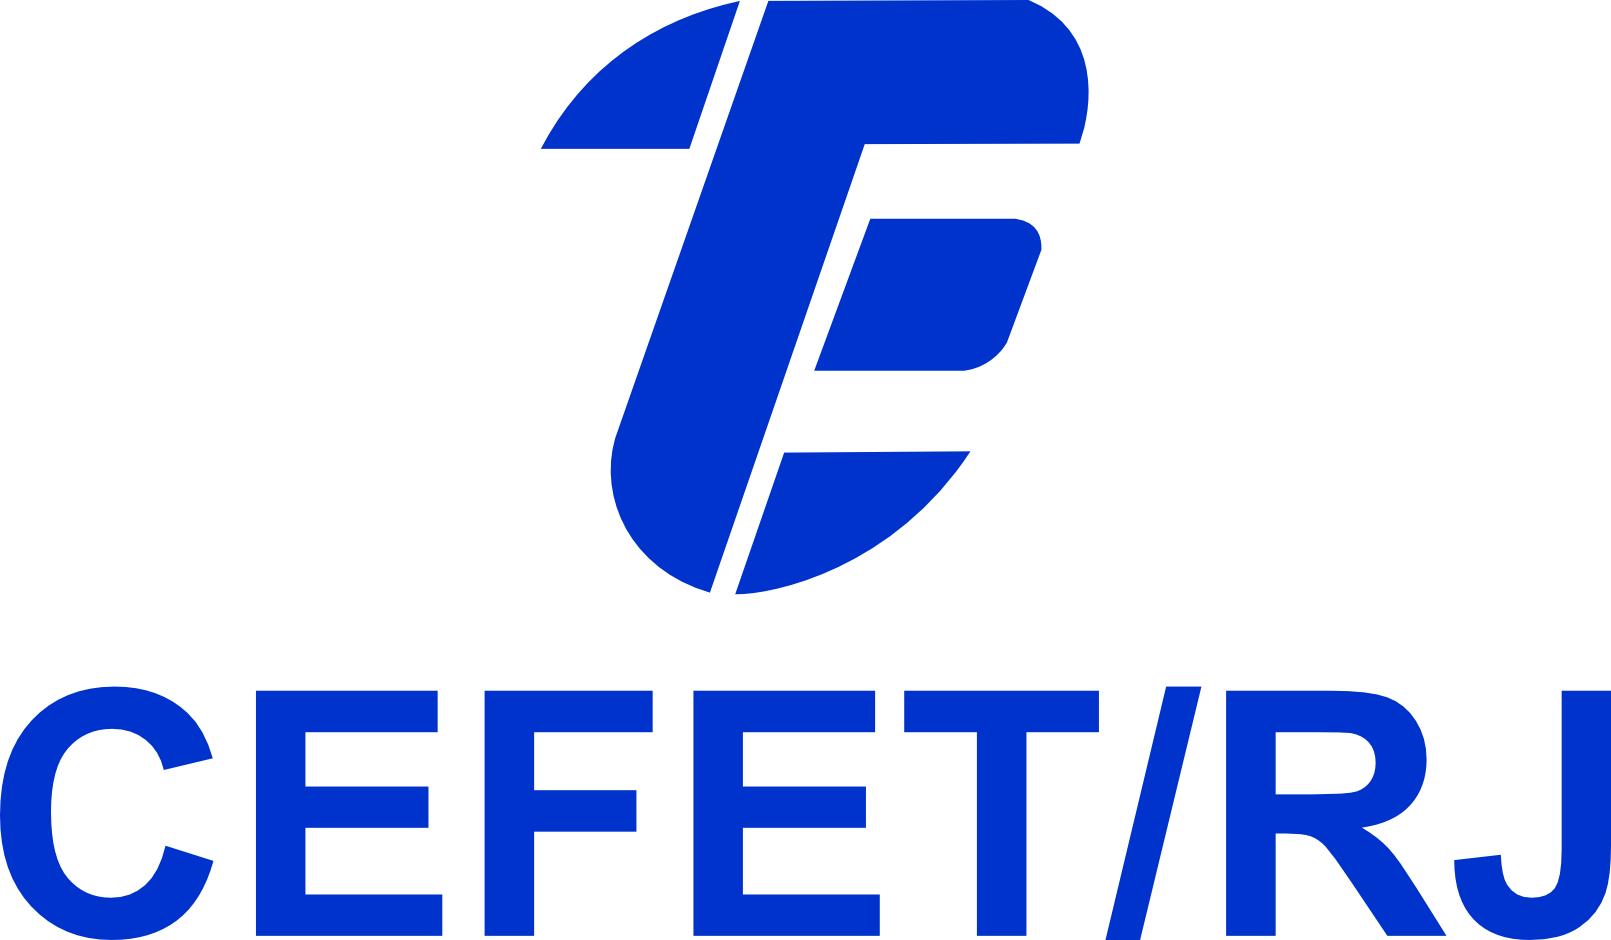 CEFET-RJ